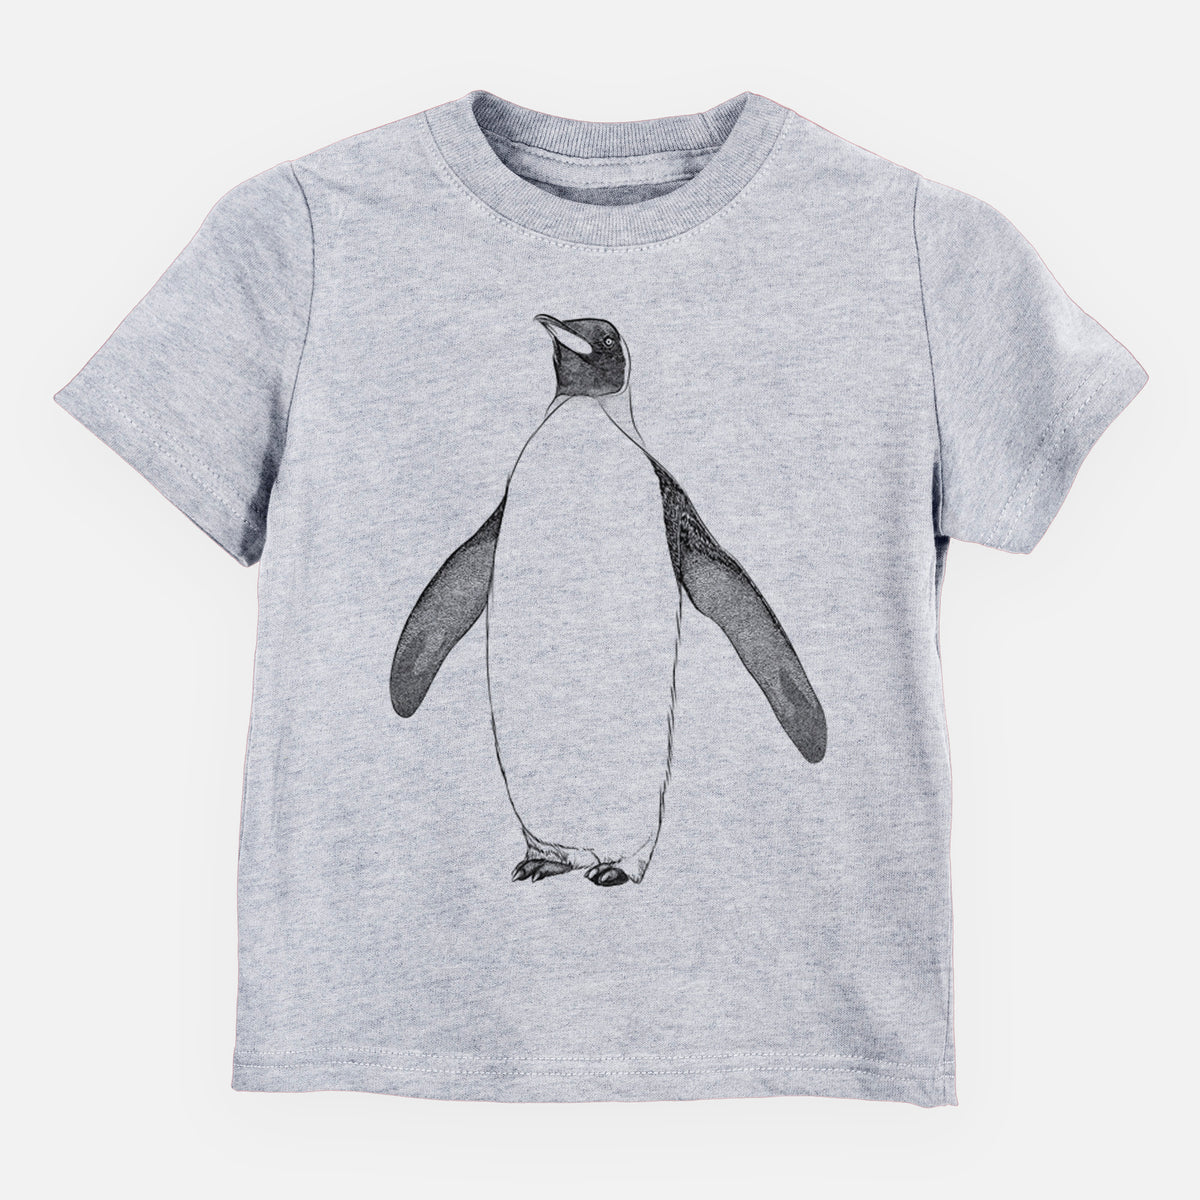 Emperor Penguin - Aptenodytes forsteri - Kids Shirt